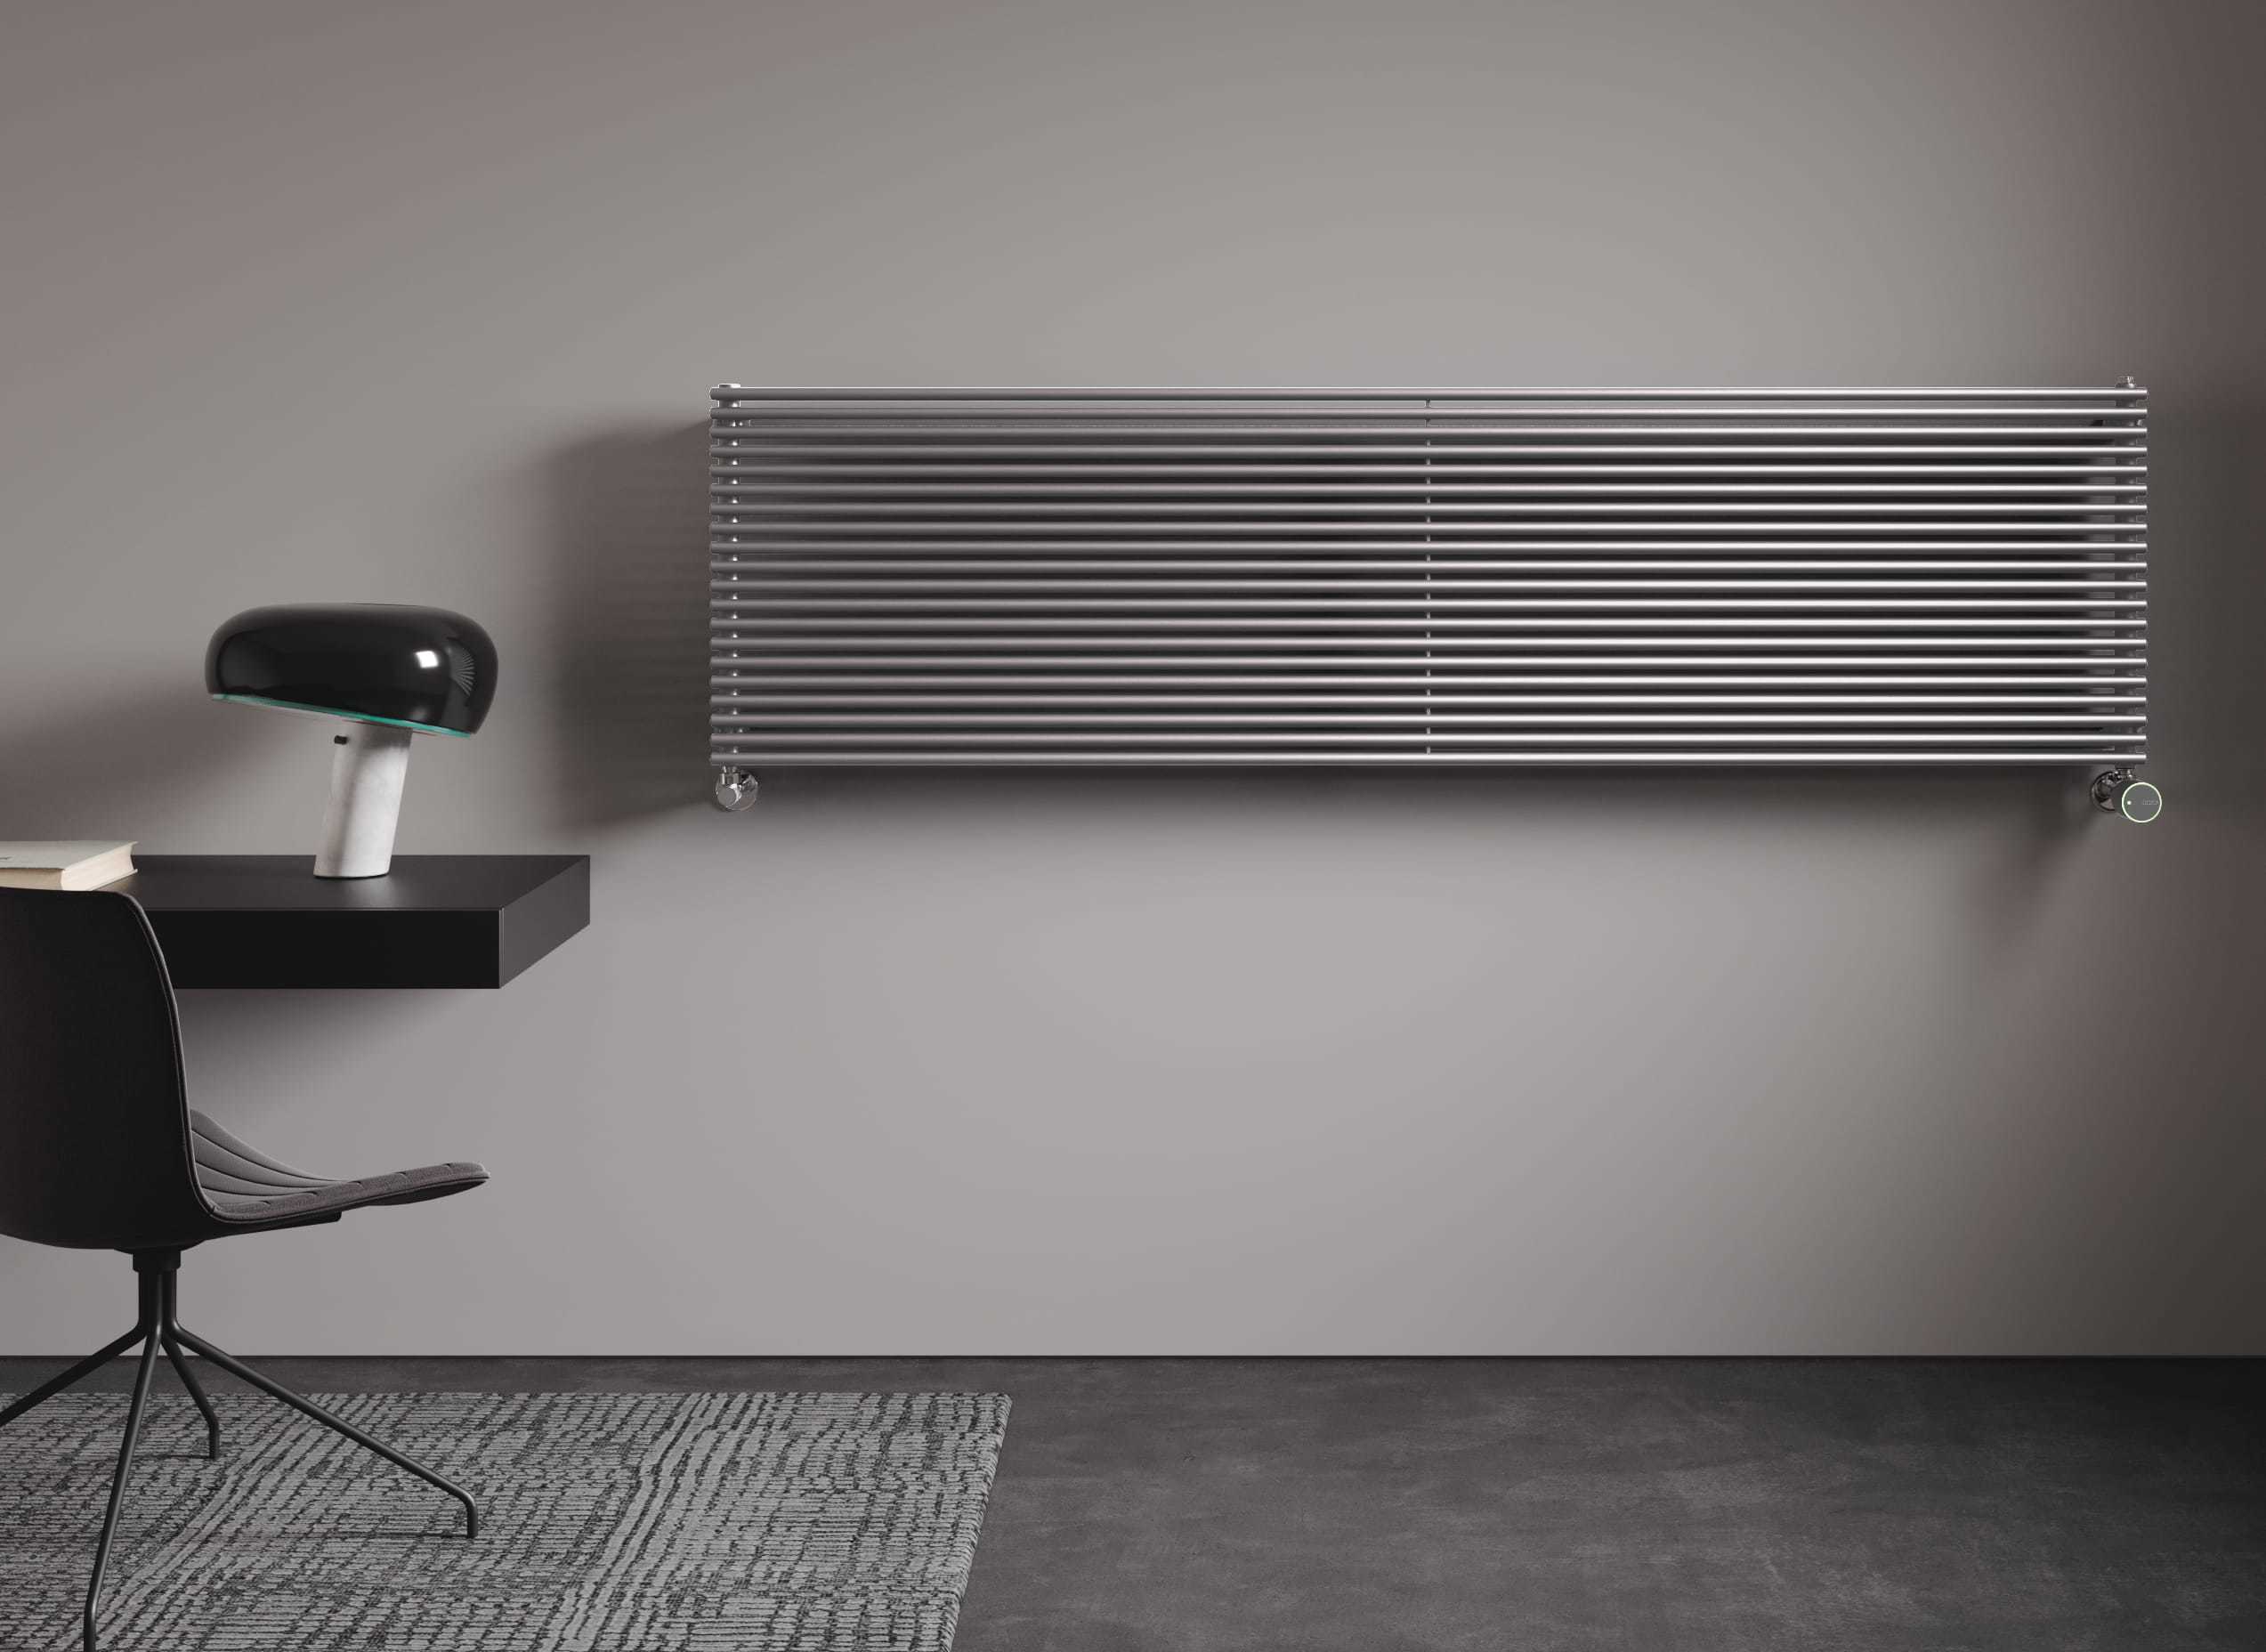 Arpa grigio chiaro radiatore termosifone termoarredo idraulico orizzontale con valvola testa termostatica intelligente wifi IRSAP NOW